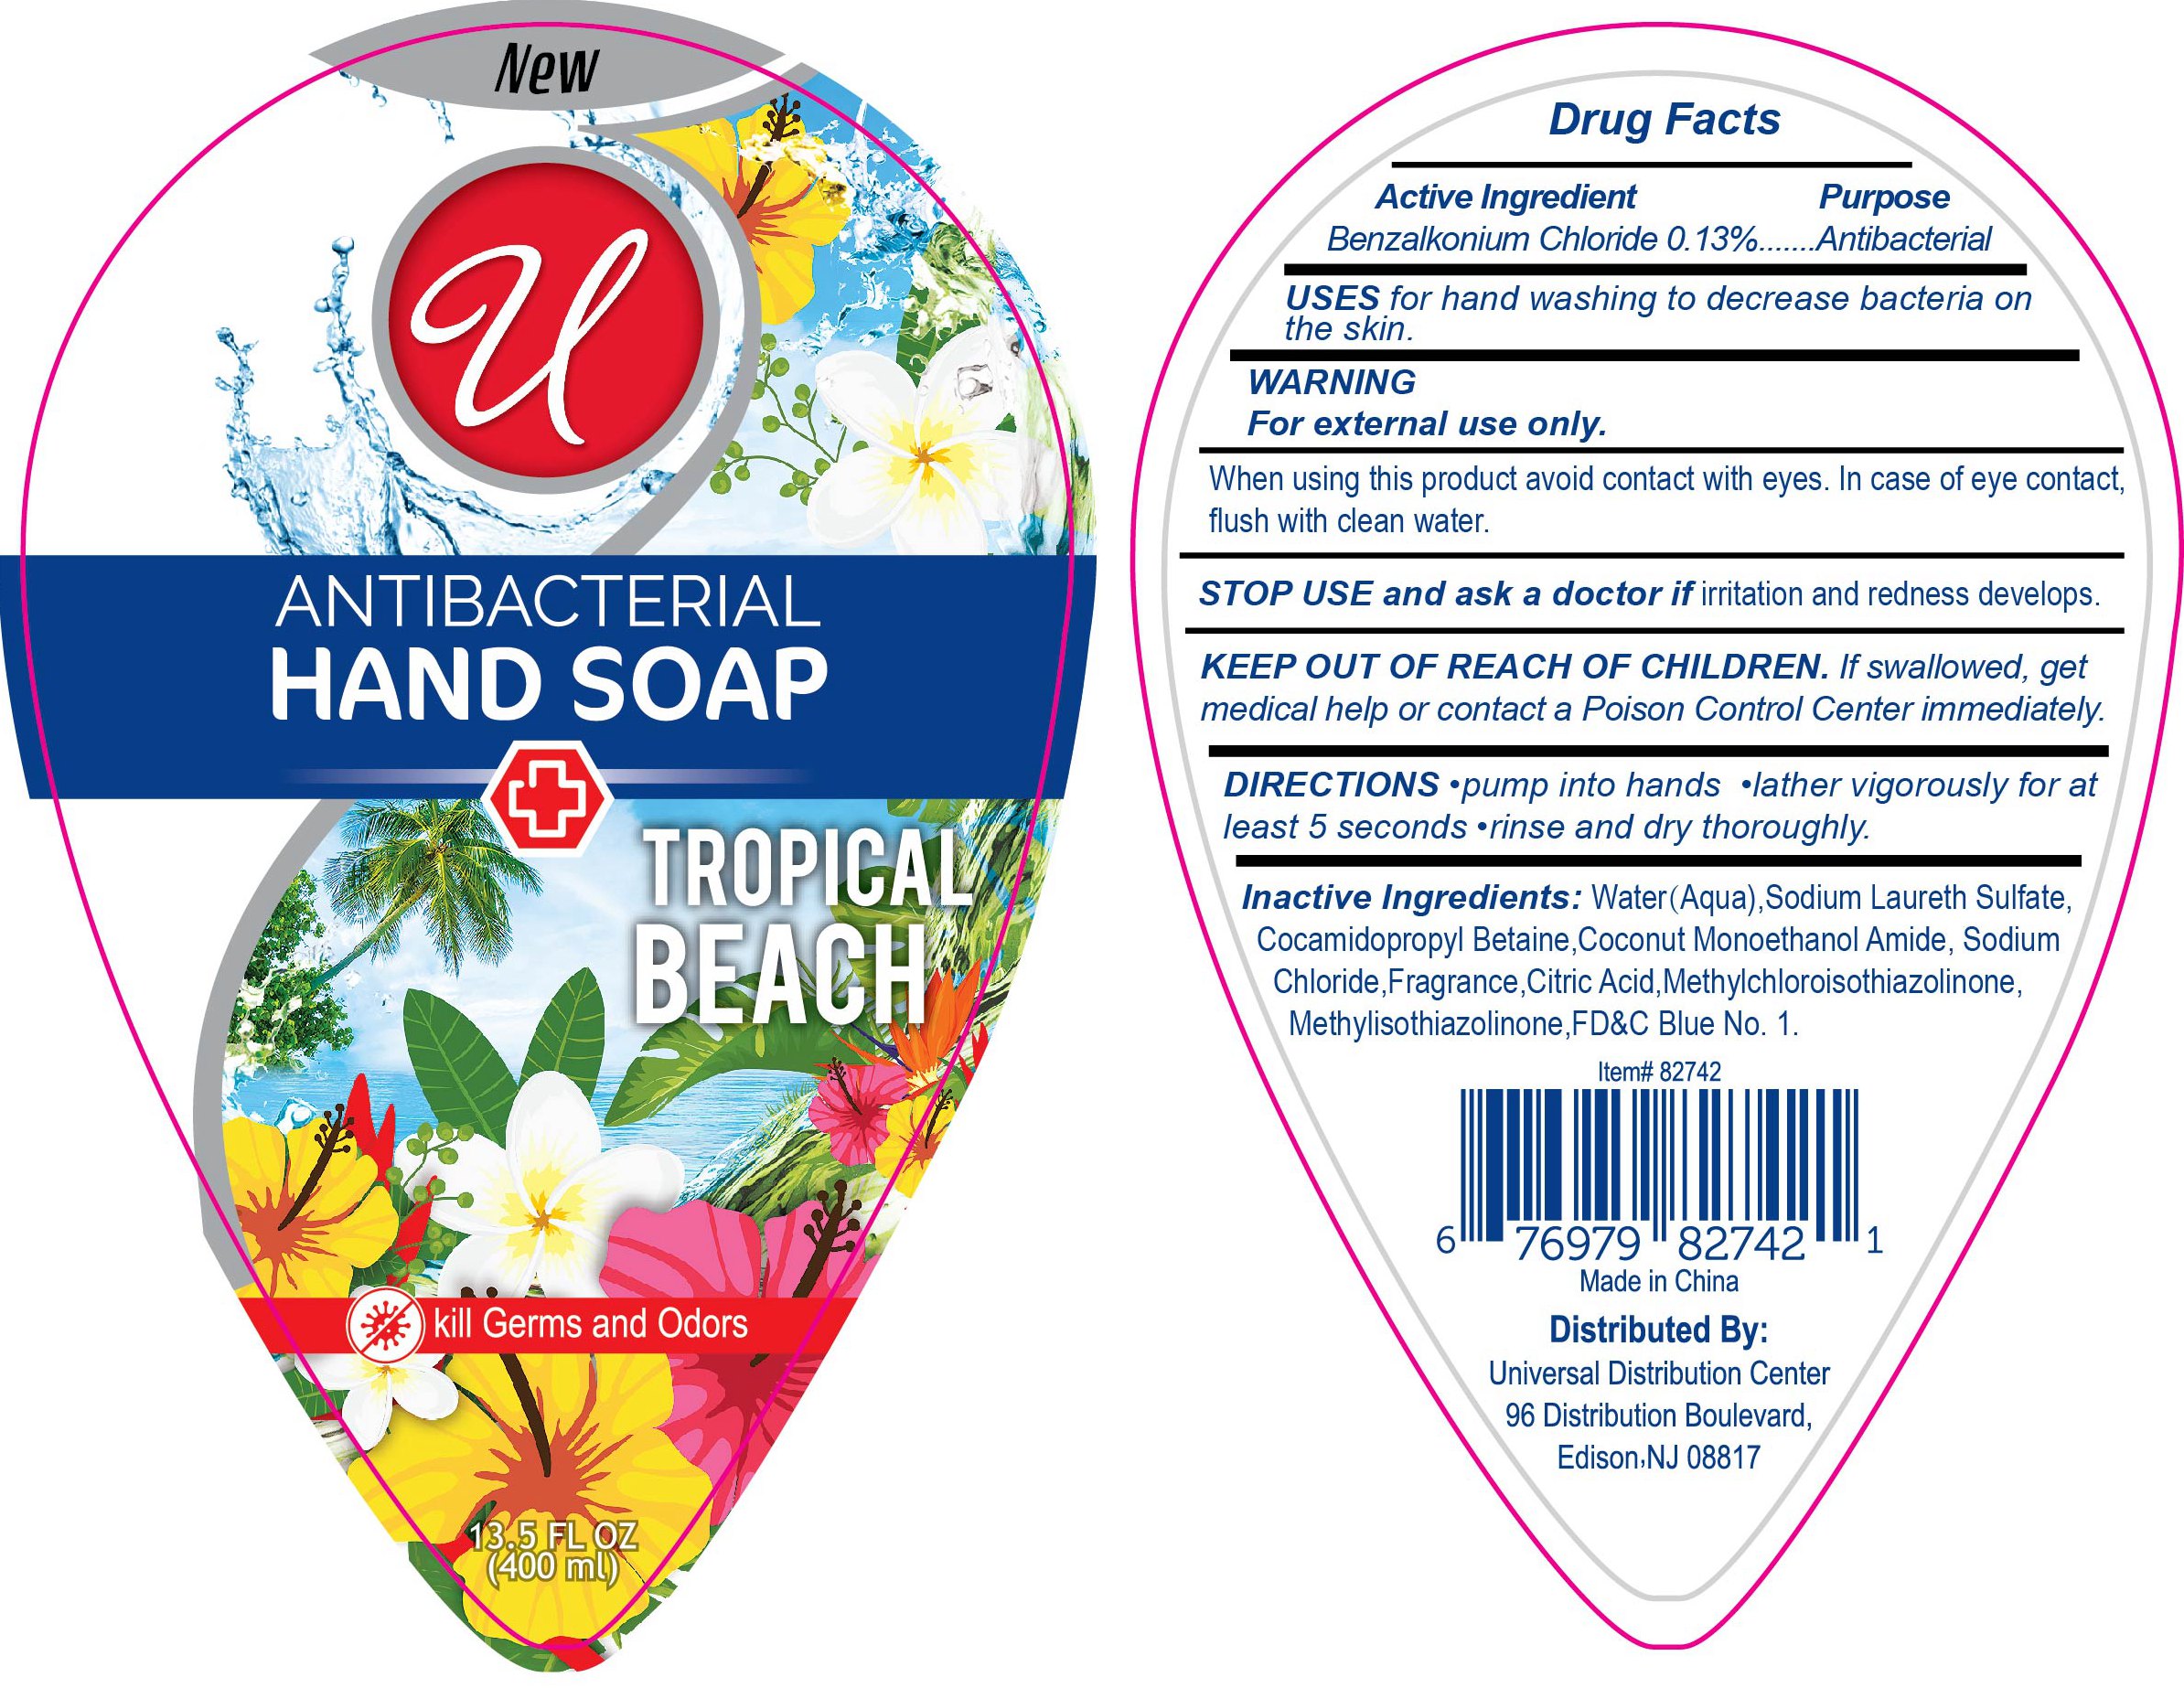 antibacterial-handwash-tropical-beach-images-benzalkonium-chloride